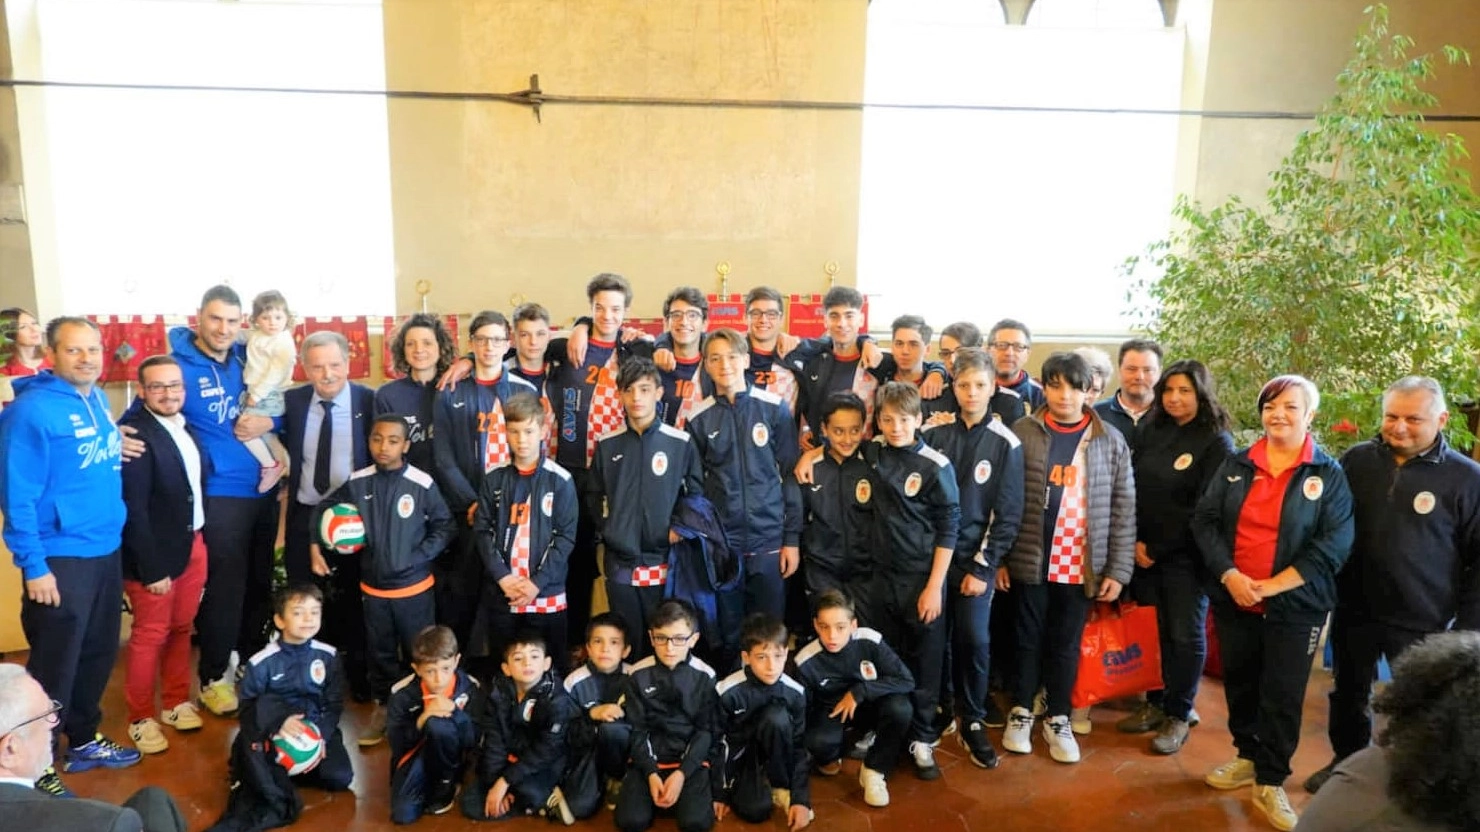 Al decimo anno di vita, il sodalizio sceglie di disputare il campionato regionale toscano. Una squadra giovane, in collaborazione con Prato